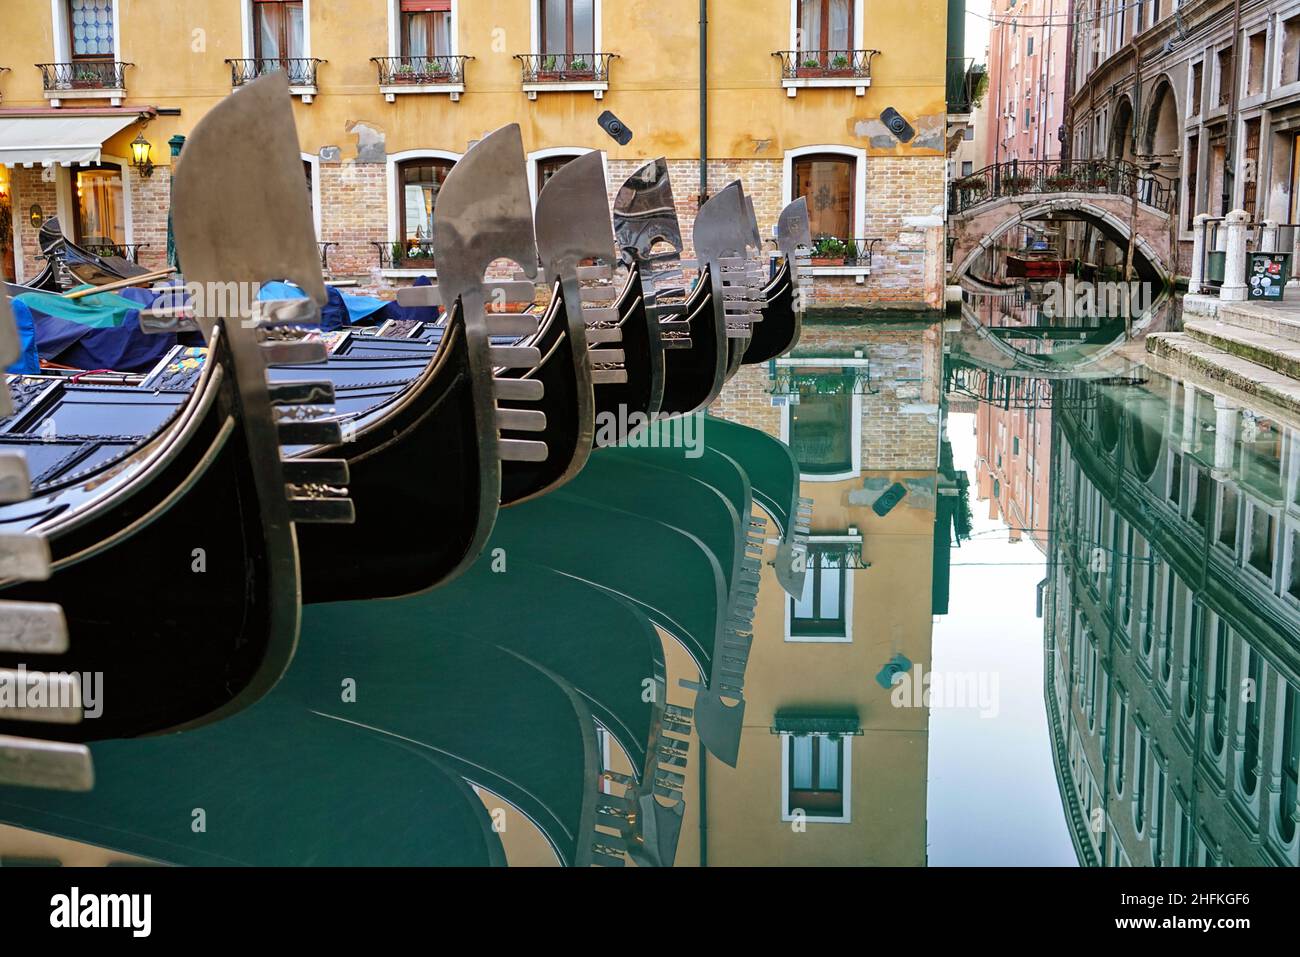 Detalle en el arco de acero de góndolas venecianas amarradas en Venecia, Italia. Foto de stock